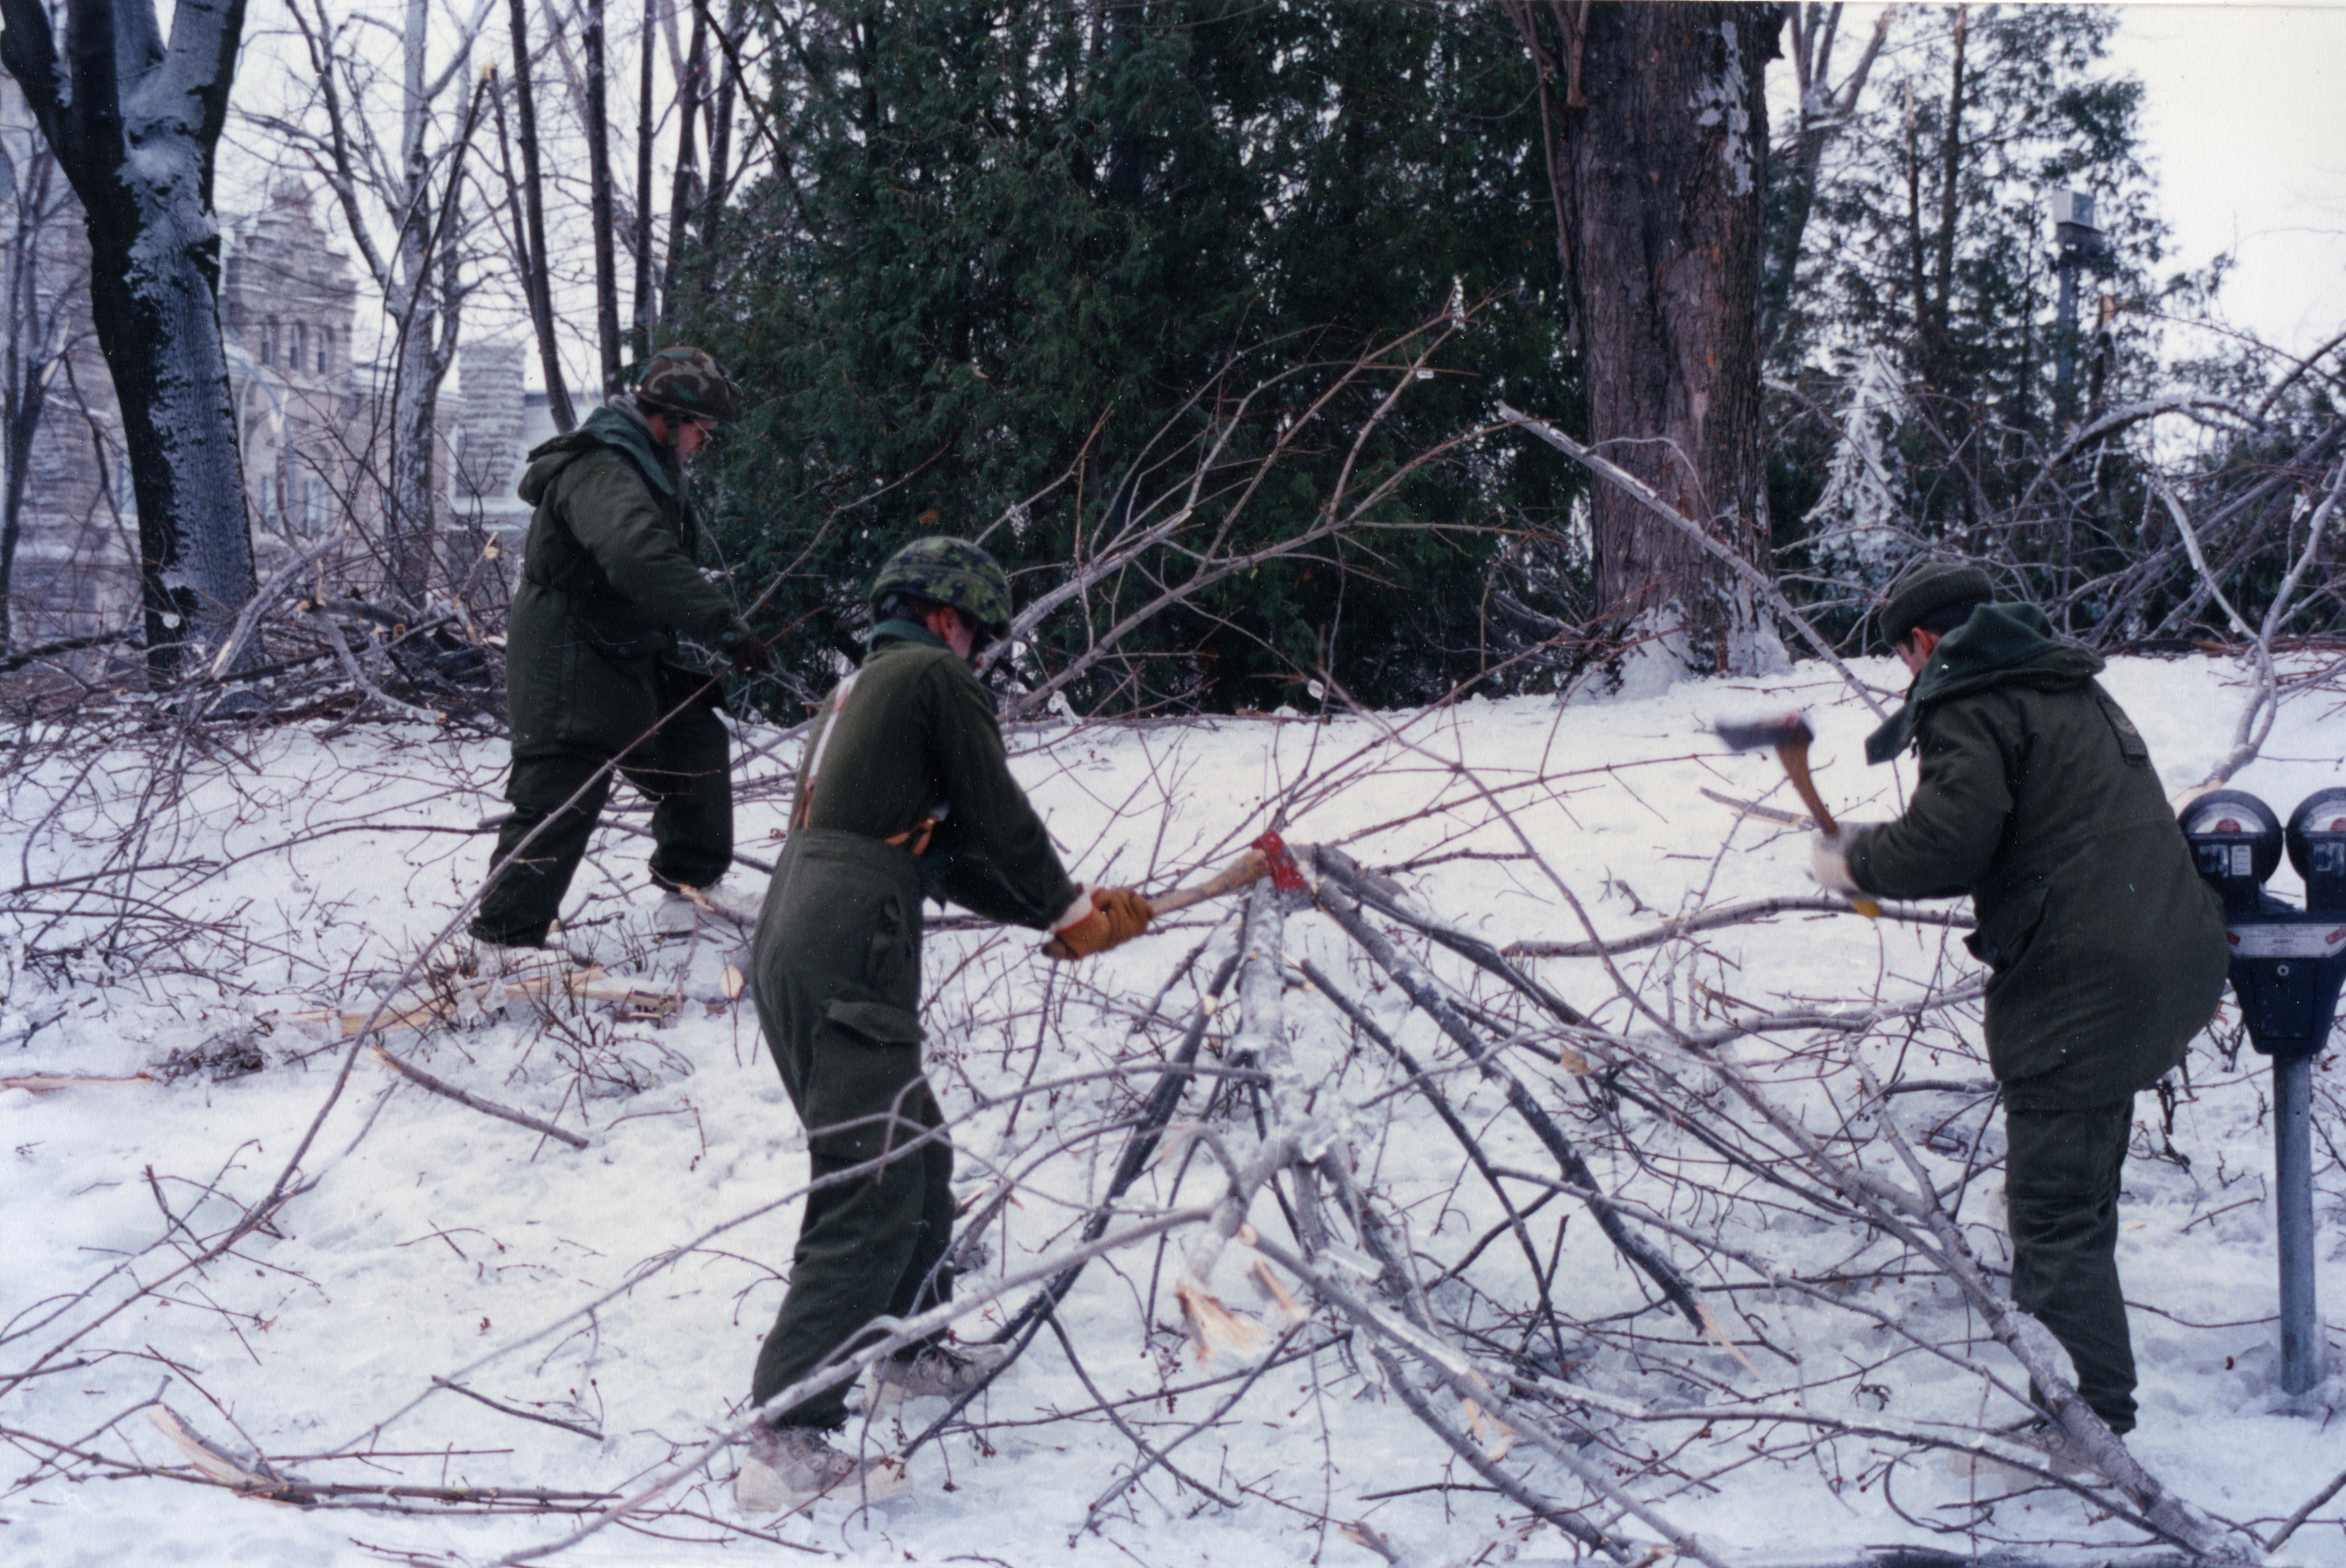 Les militaires brisent les branches à la hache pour les ramasser.